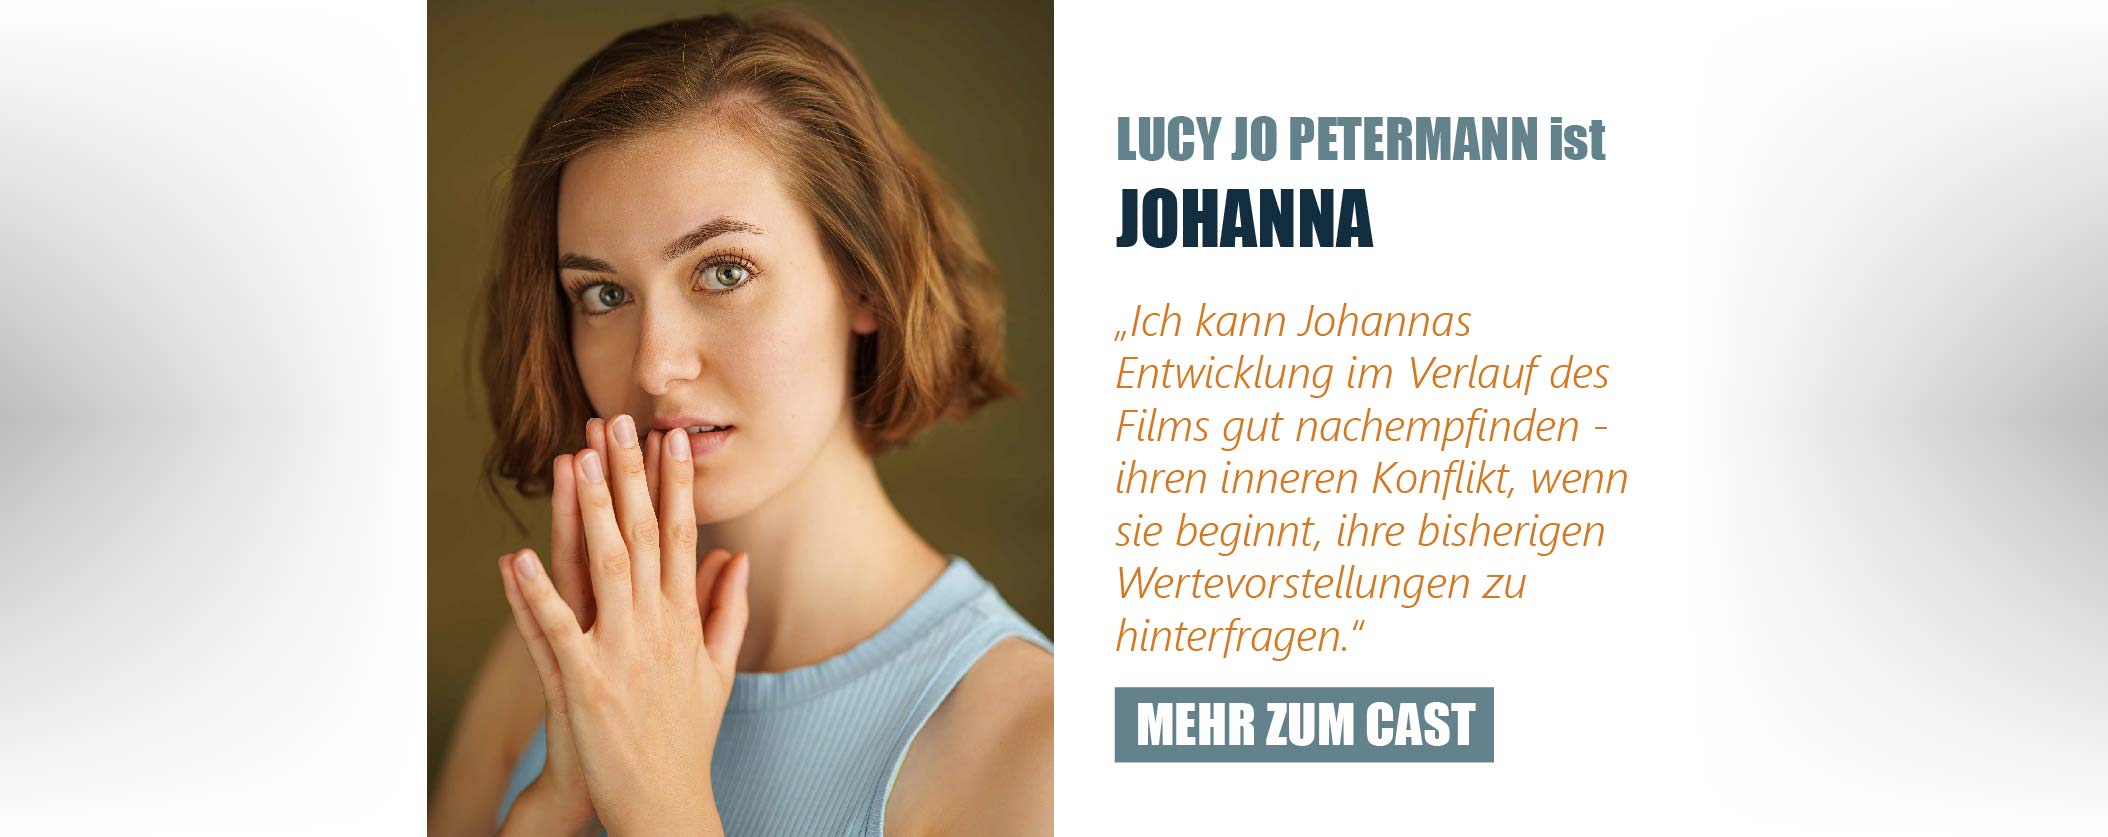 Die Schauspielerin Lucy Jo Petermann ist Johanna